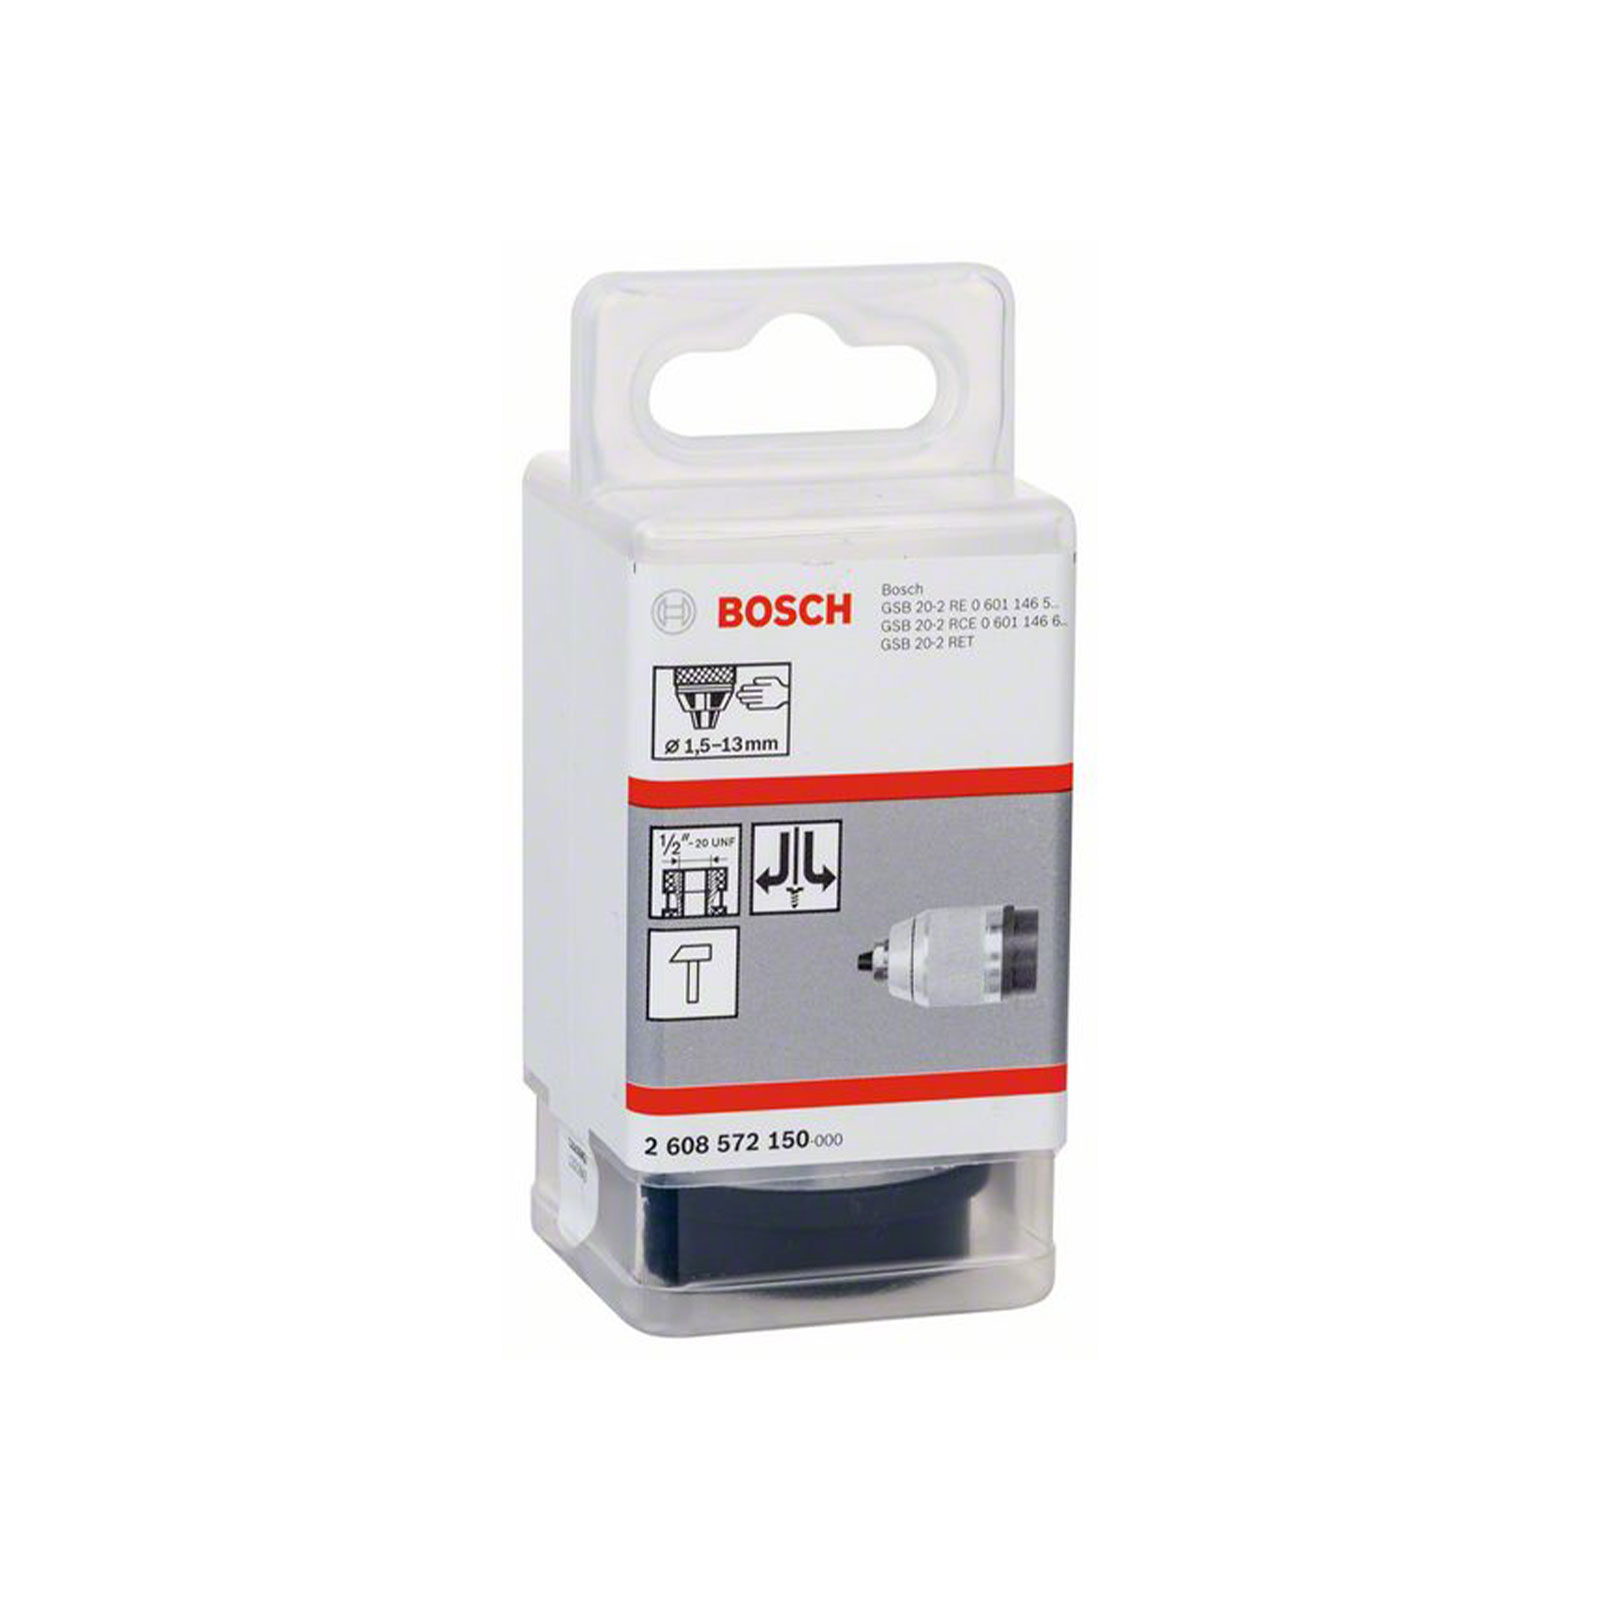 Bosch Professional Schnellspannbohrfutter mattverchromt, 1,5 bis 13 mm, 1/2 Zoll bis 20